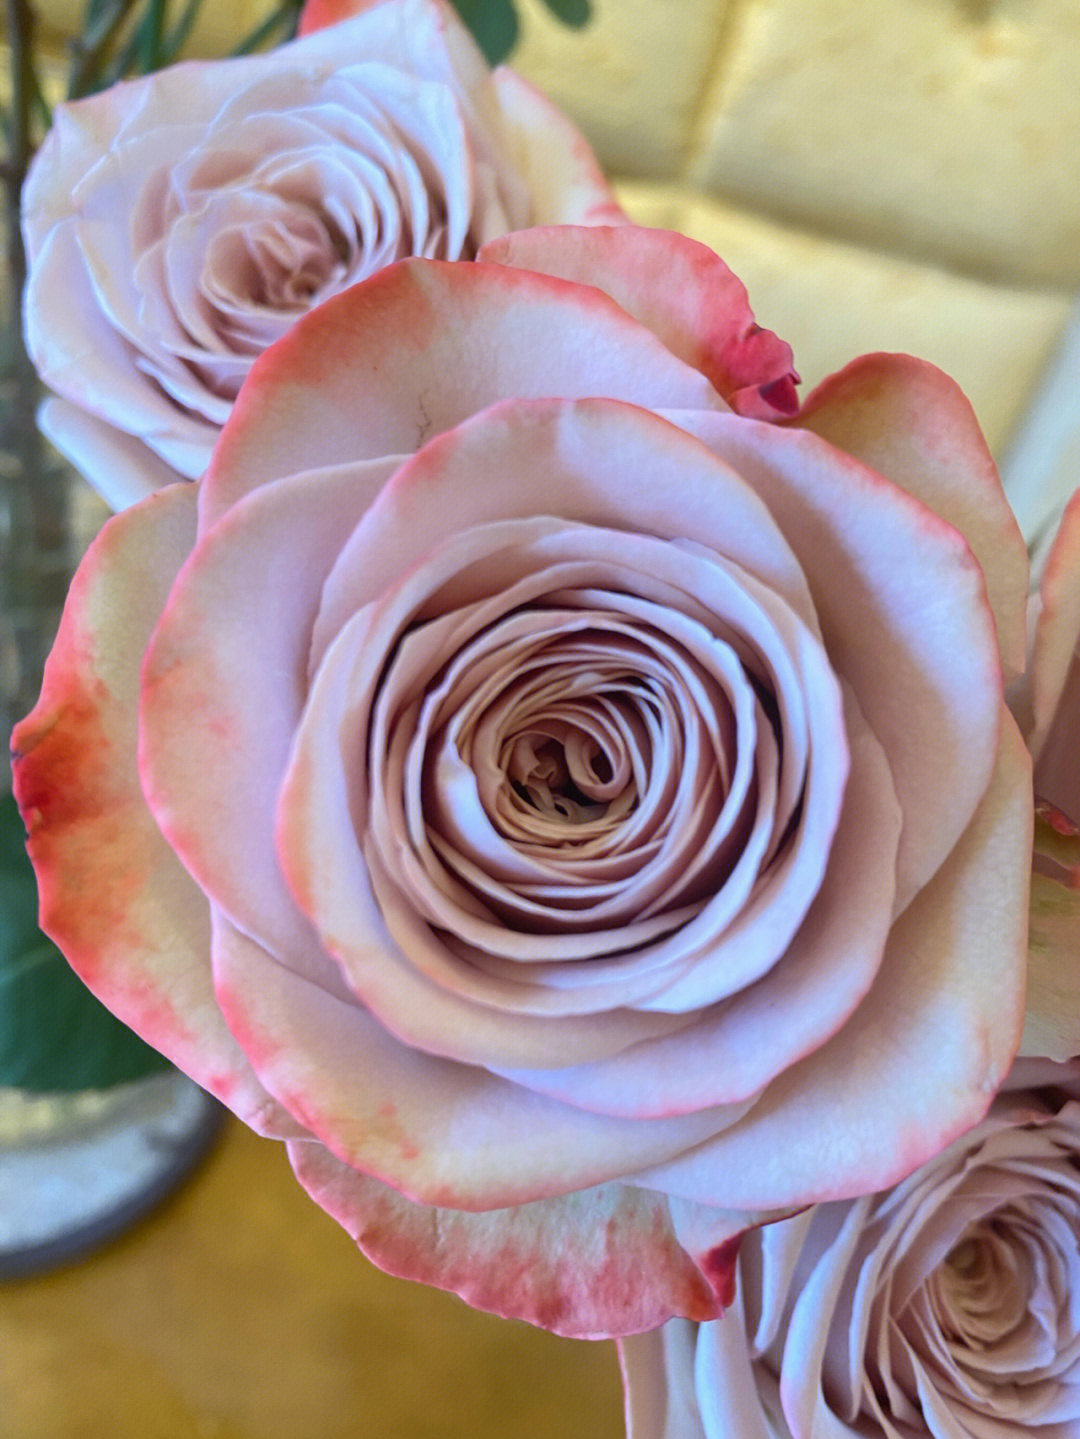 卡布奇诺玫瑰之所以有这样的花语和寓意,是因为它的花色为淡粉色中透